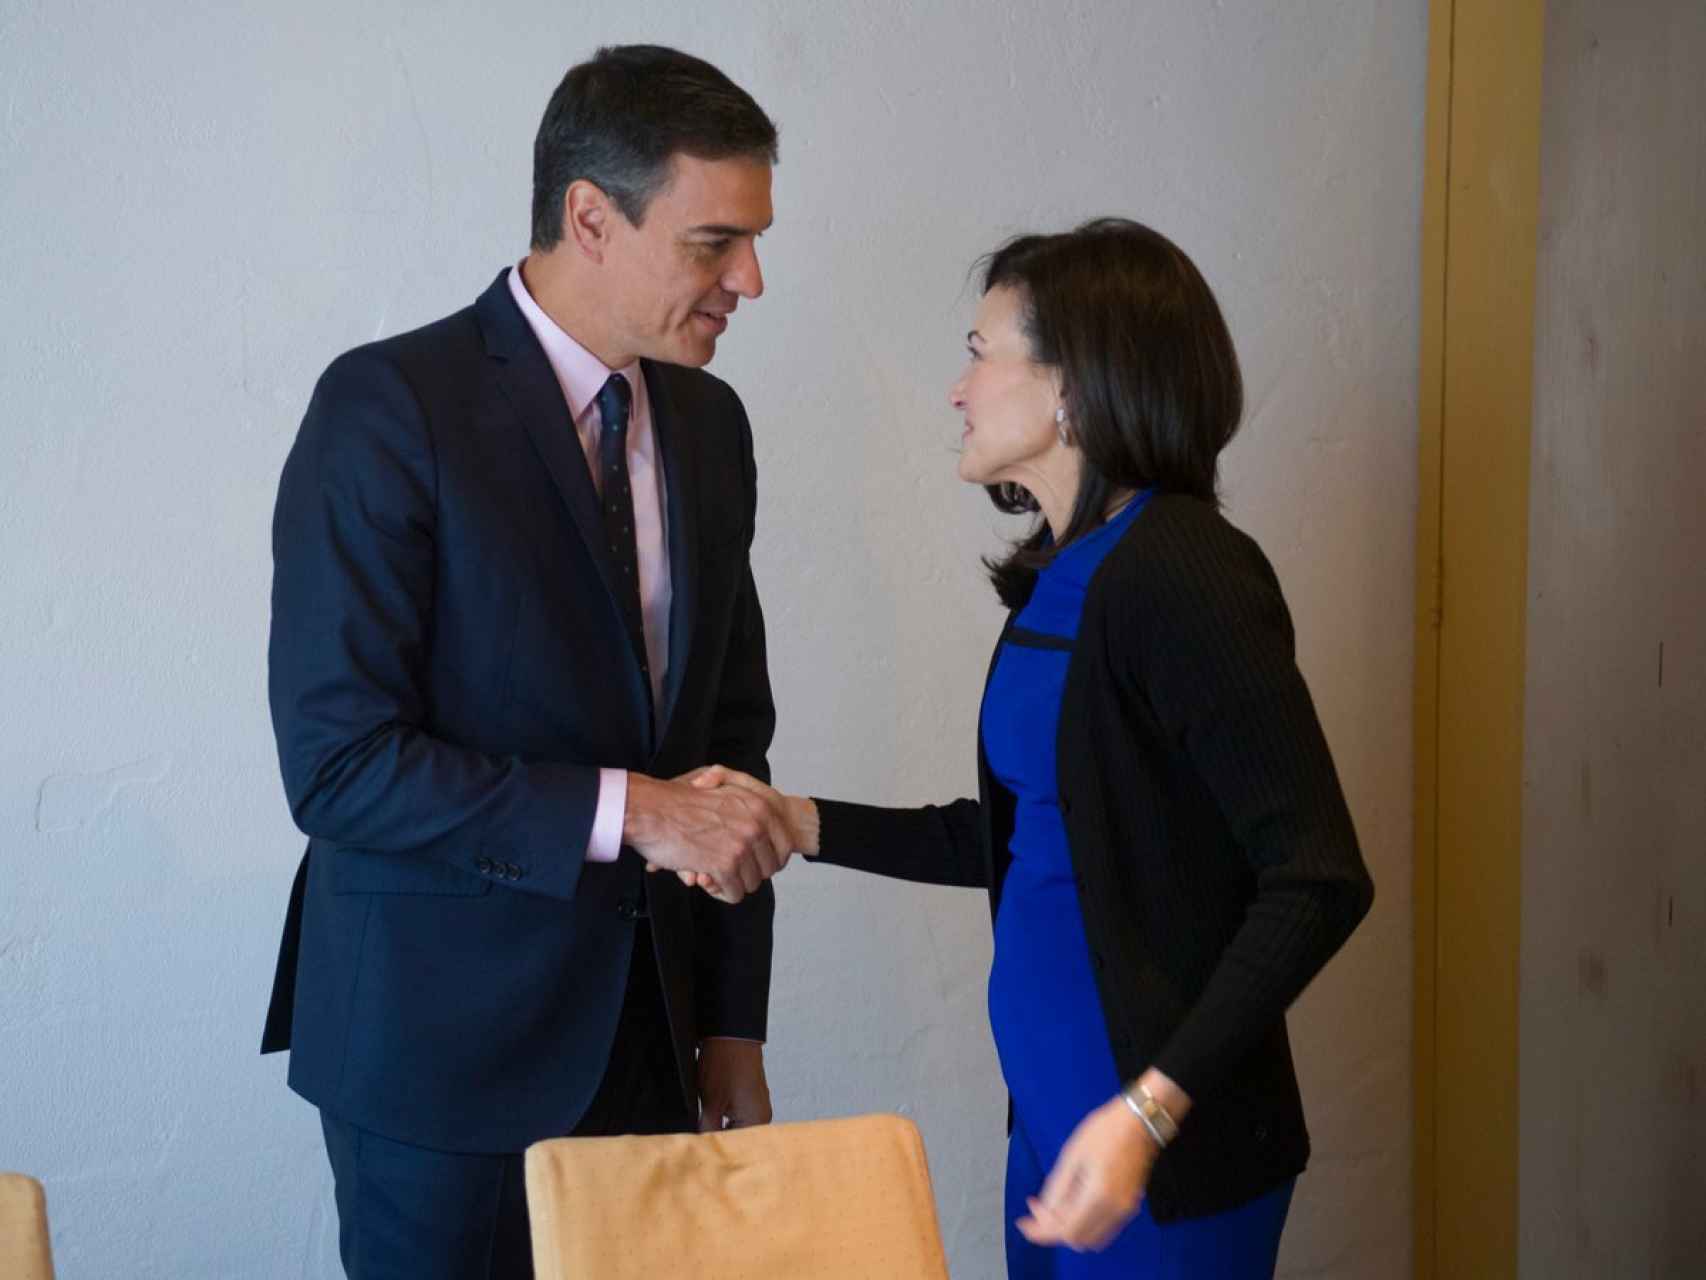 El presidente del Gobierno, Pedro Sánchez, junto a la jefa de operaciones de Facebook, Sheryl Sandberg.